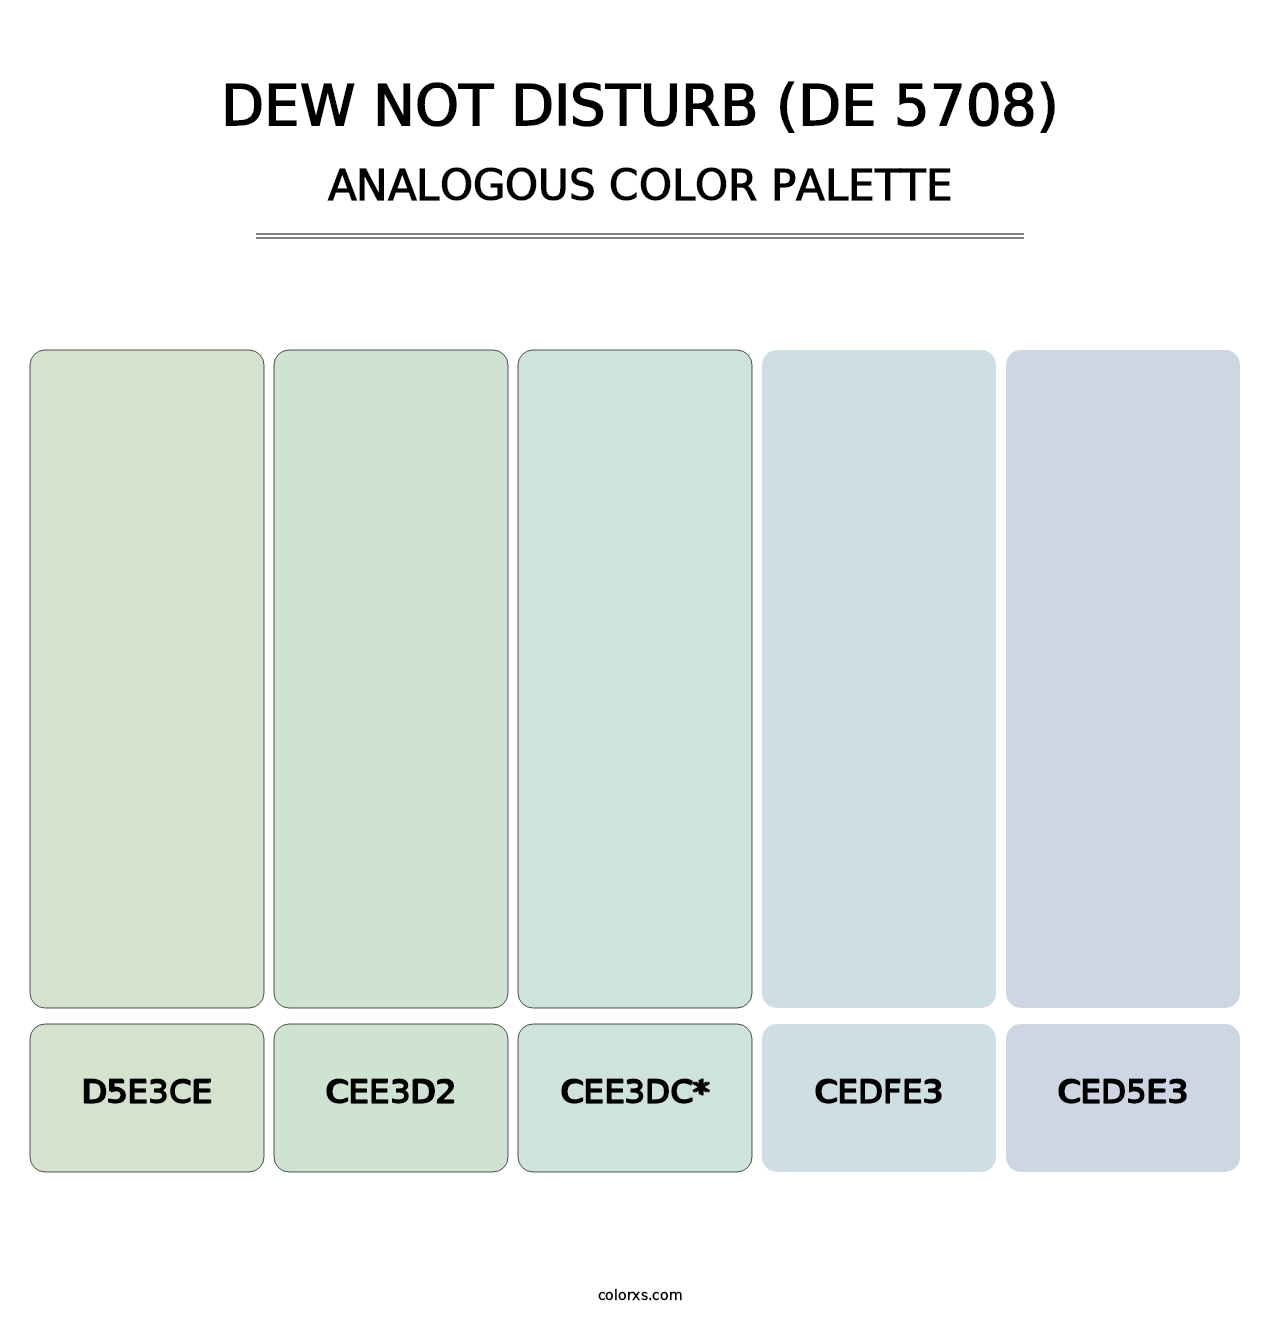 Dew Not Disturb (DE 5708) - Analogous Color Palette